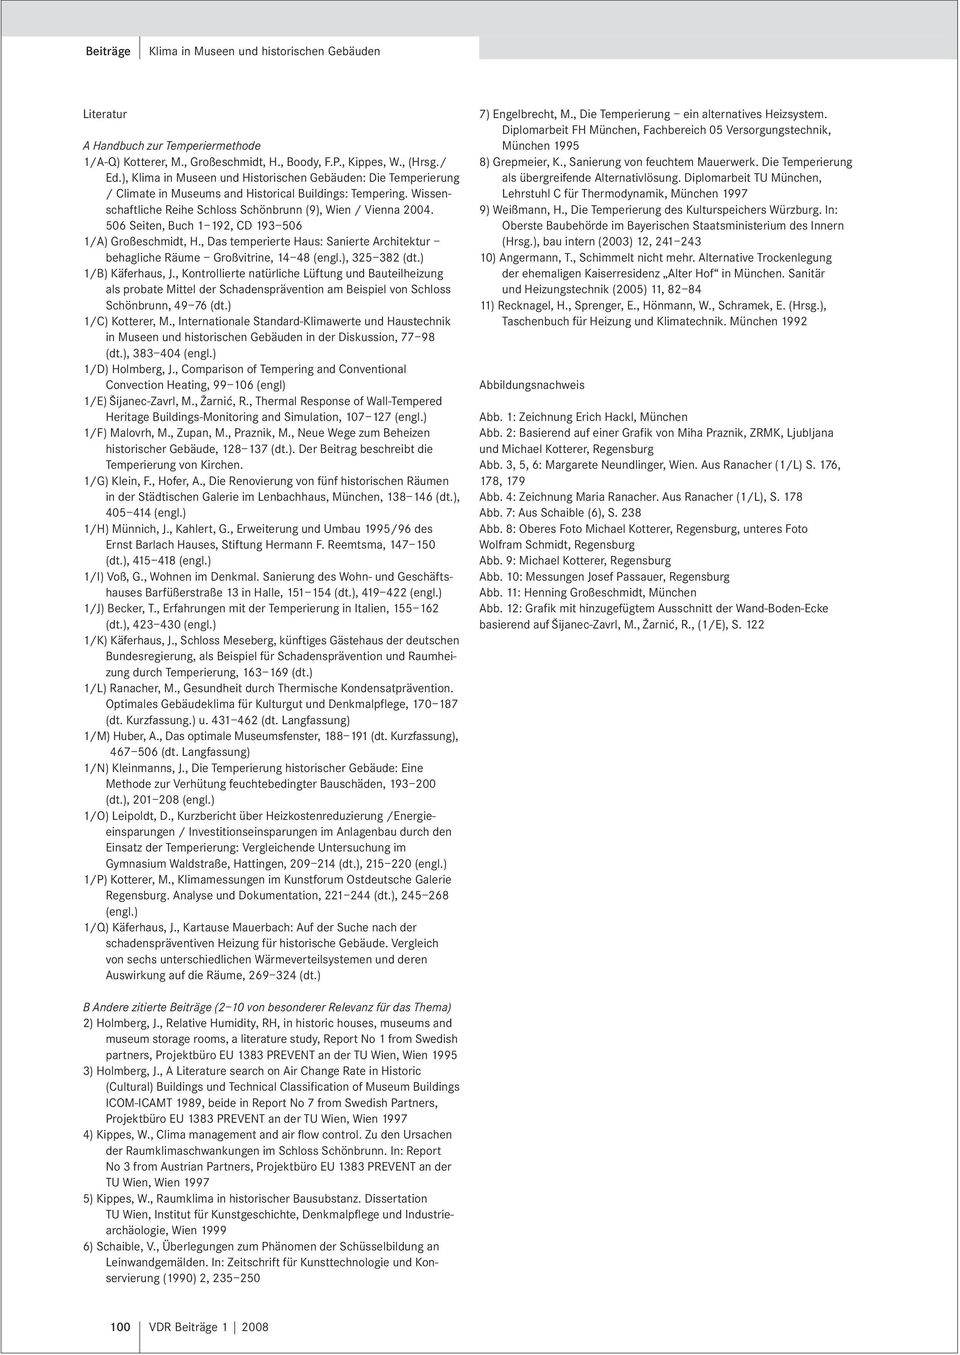 506 Seiten, Buch 1 192, CD 193 506 1/A) Großeschmidt, H., Das temperierte Haus: Sanierte Architektur behagliche Räume Großvitrine, 14 48 (engl.), 325 382 (dt.) 1/B) Käferhaus, J.